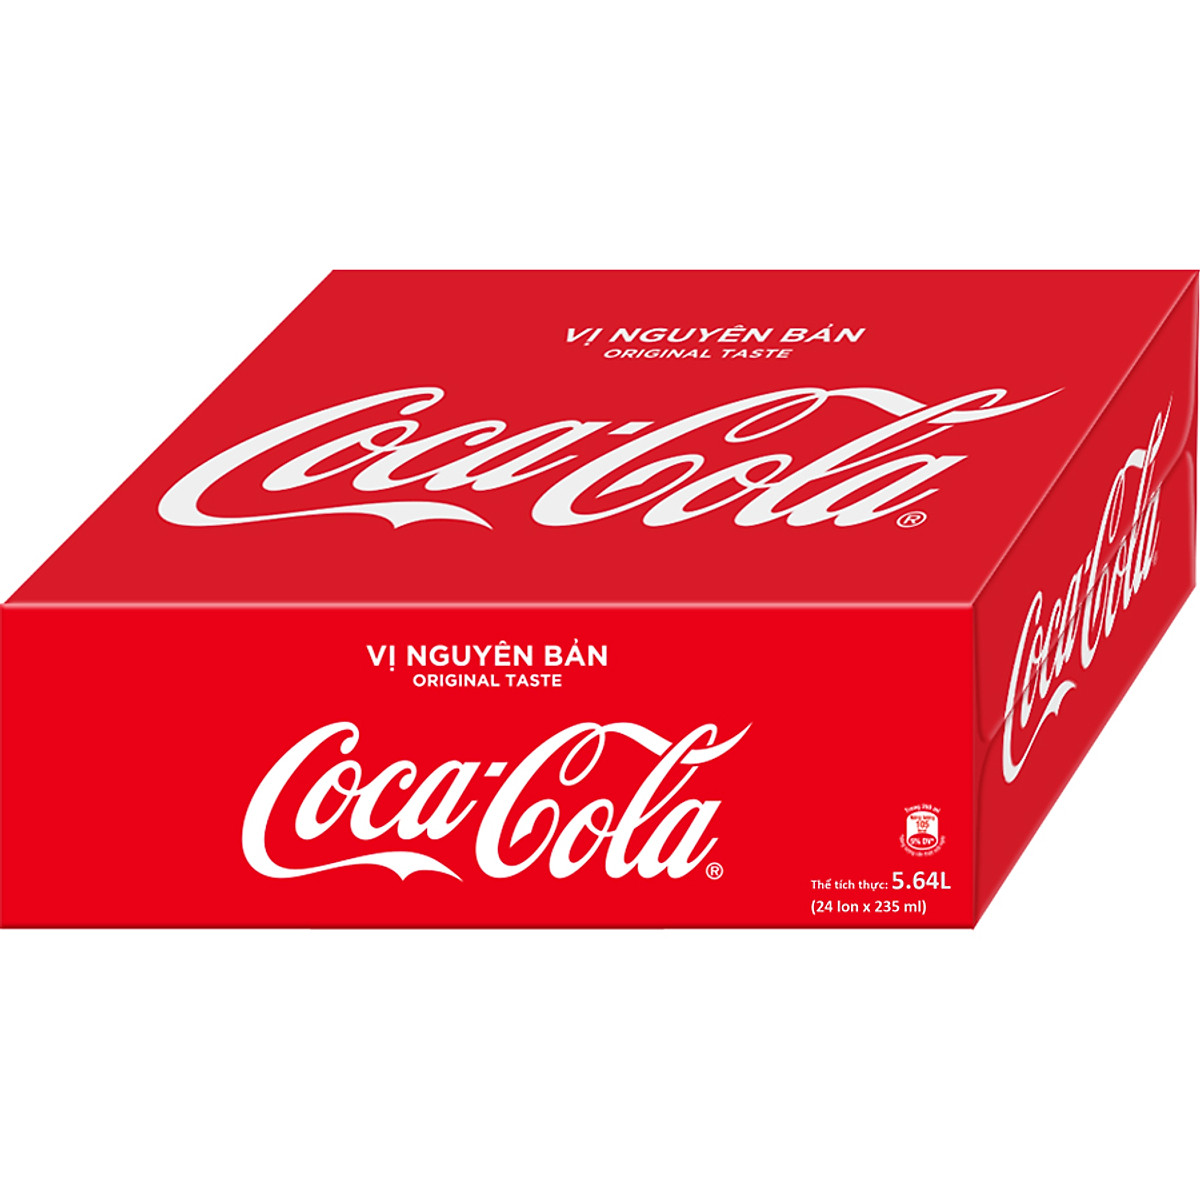 Thùng 24 lon x 235ml Coca Cola vị nguyên bản